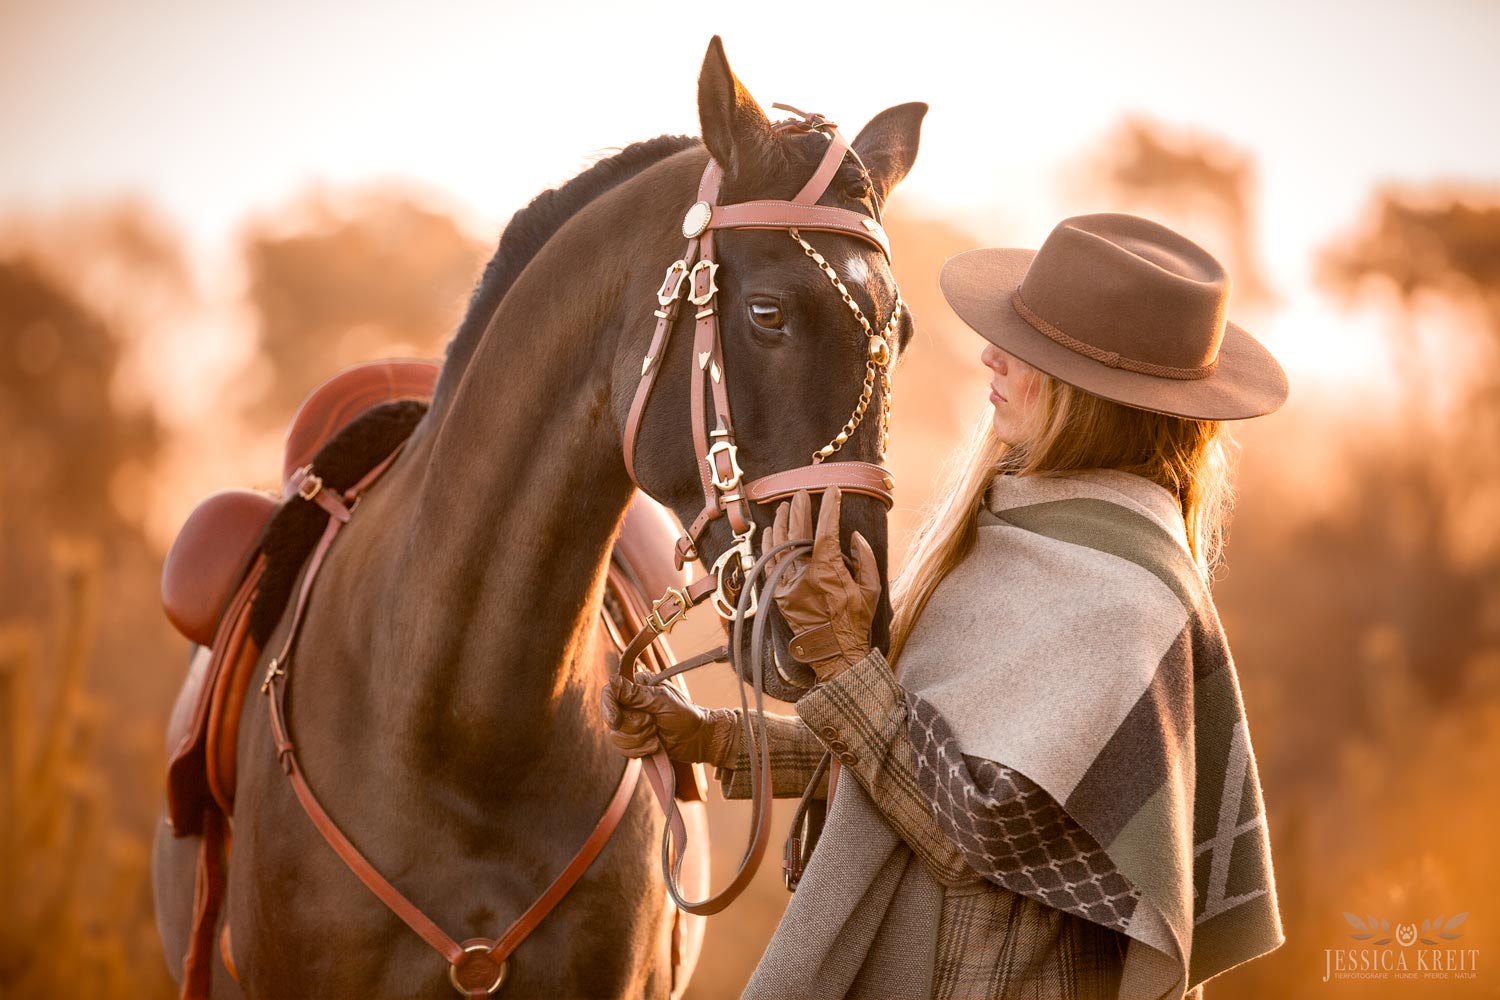 Pferdefotografie von Tierfotografie Jessica Kreit aus Hannover. Porträt von Pferd und Reiterin im Sonnenaufgang.